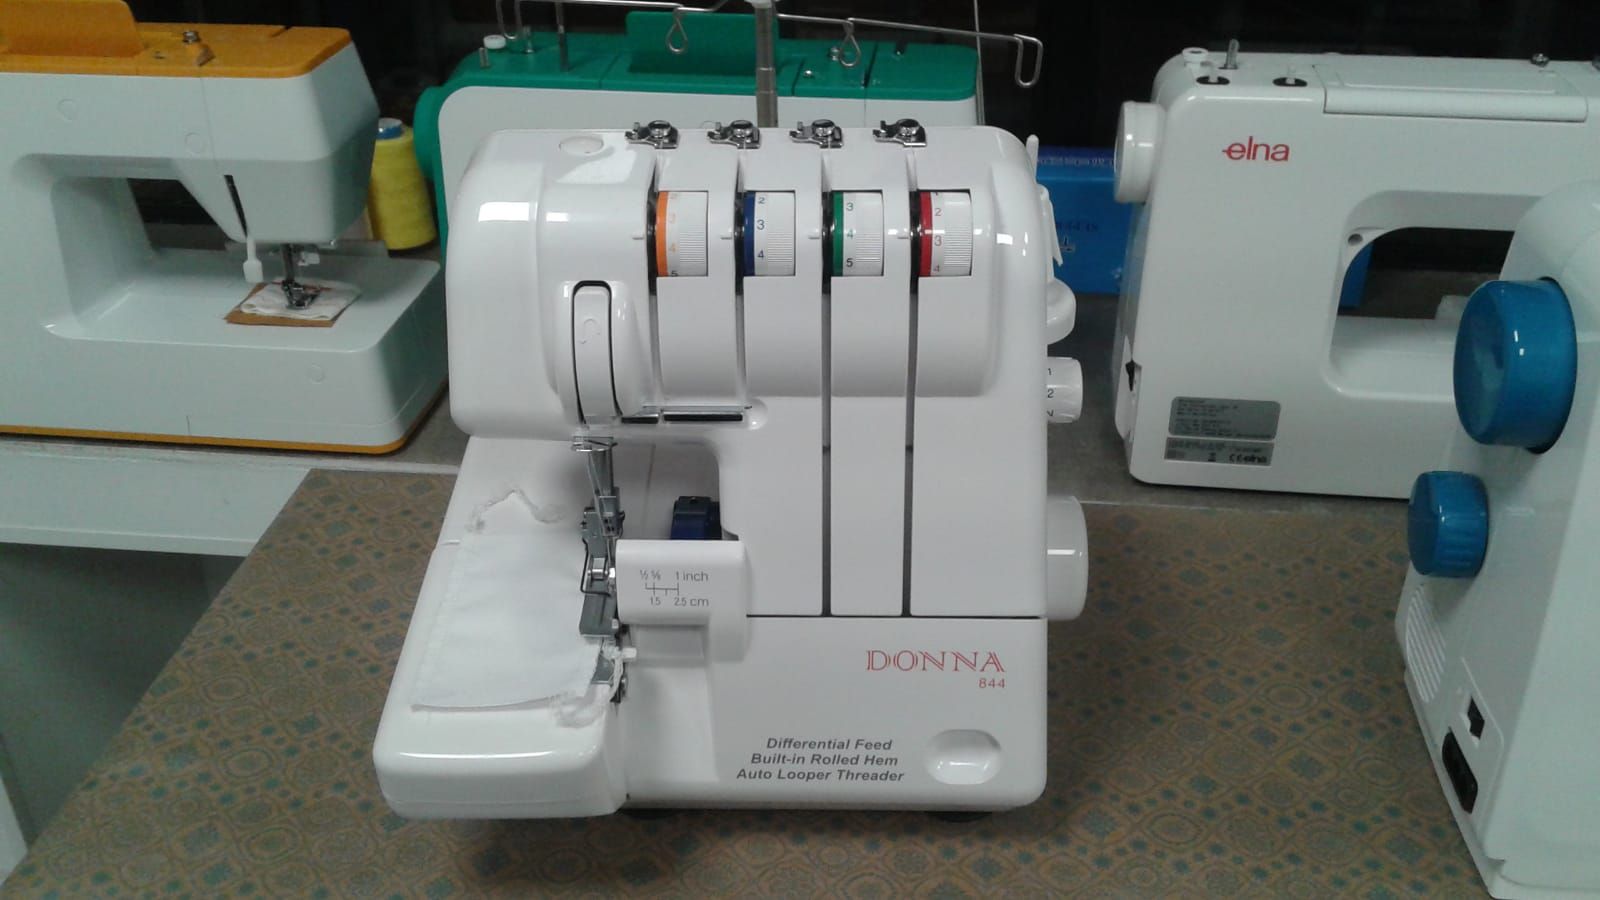 Venta de máquinas de coser en Toledo